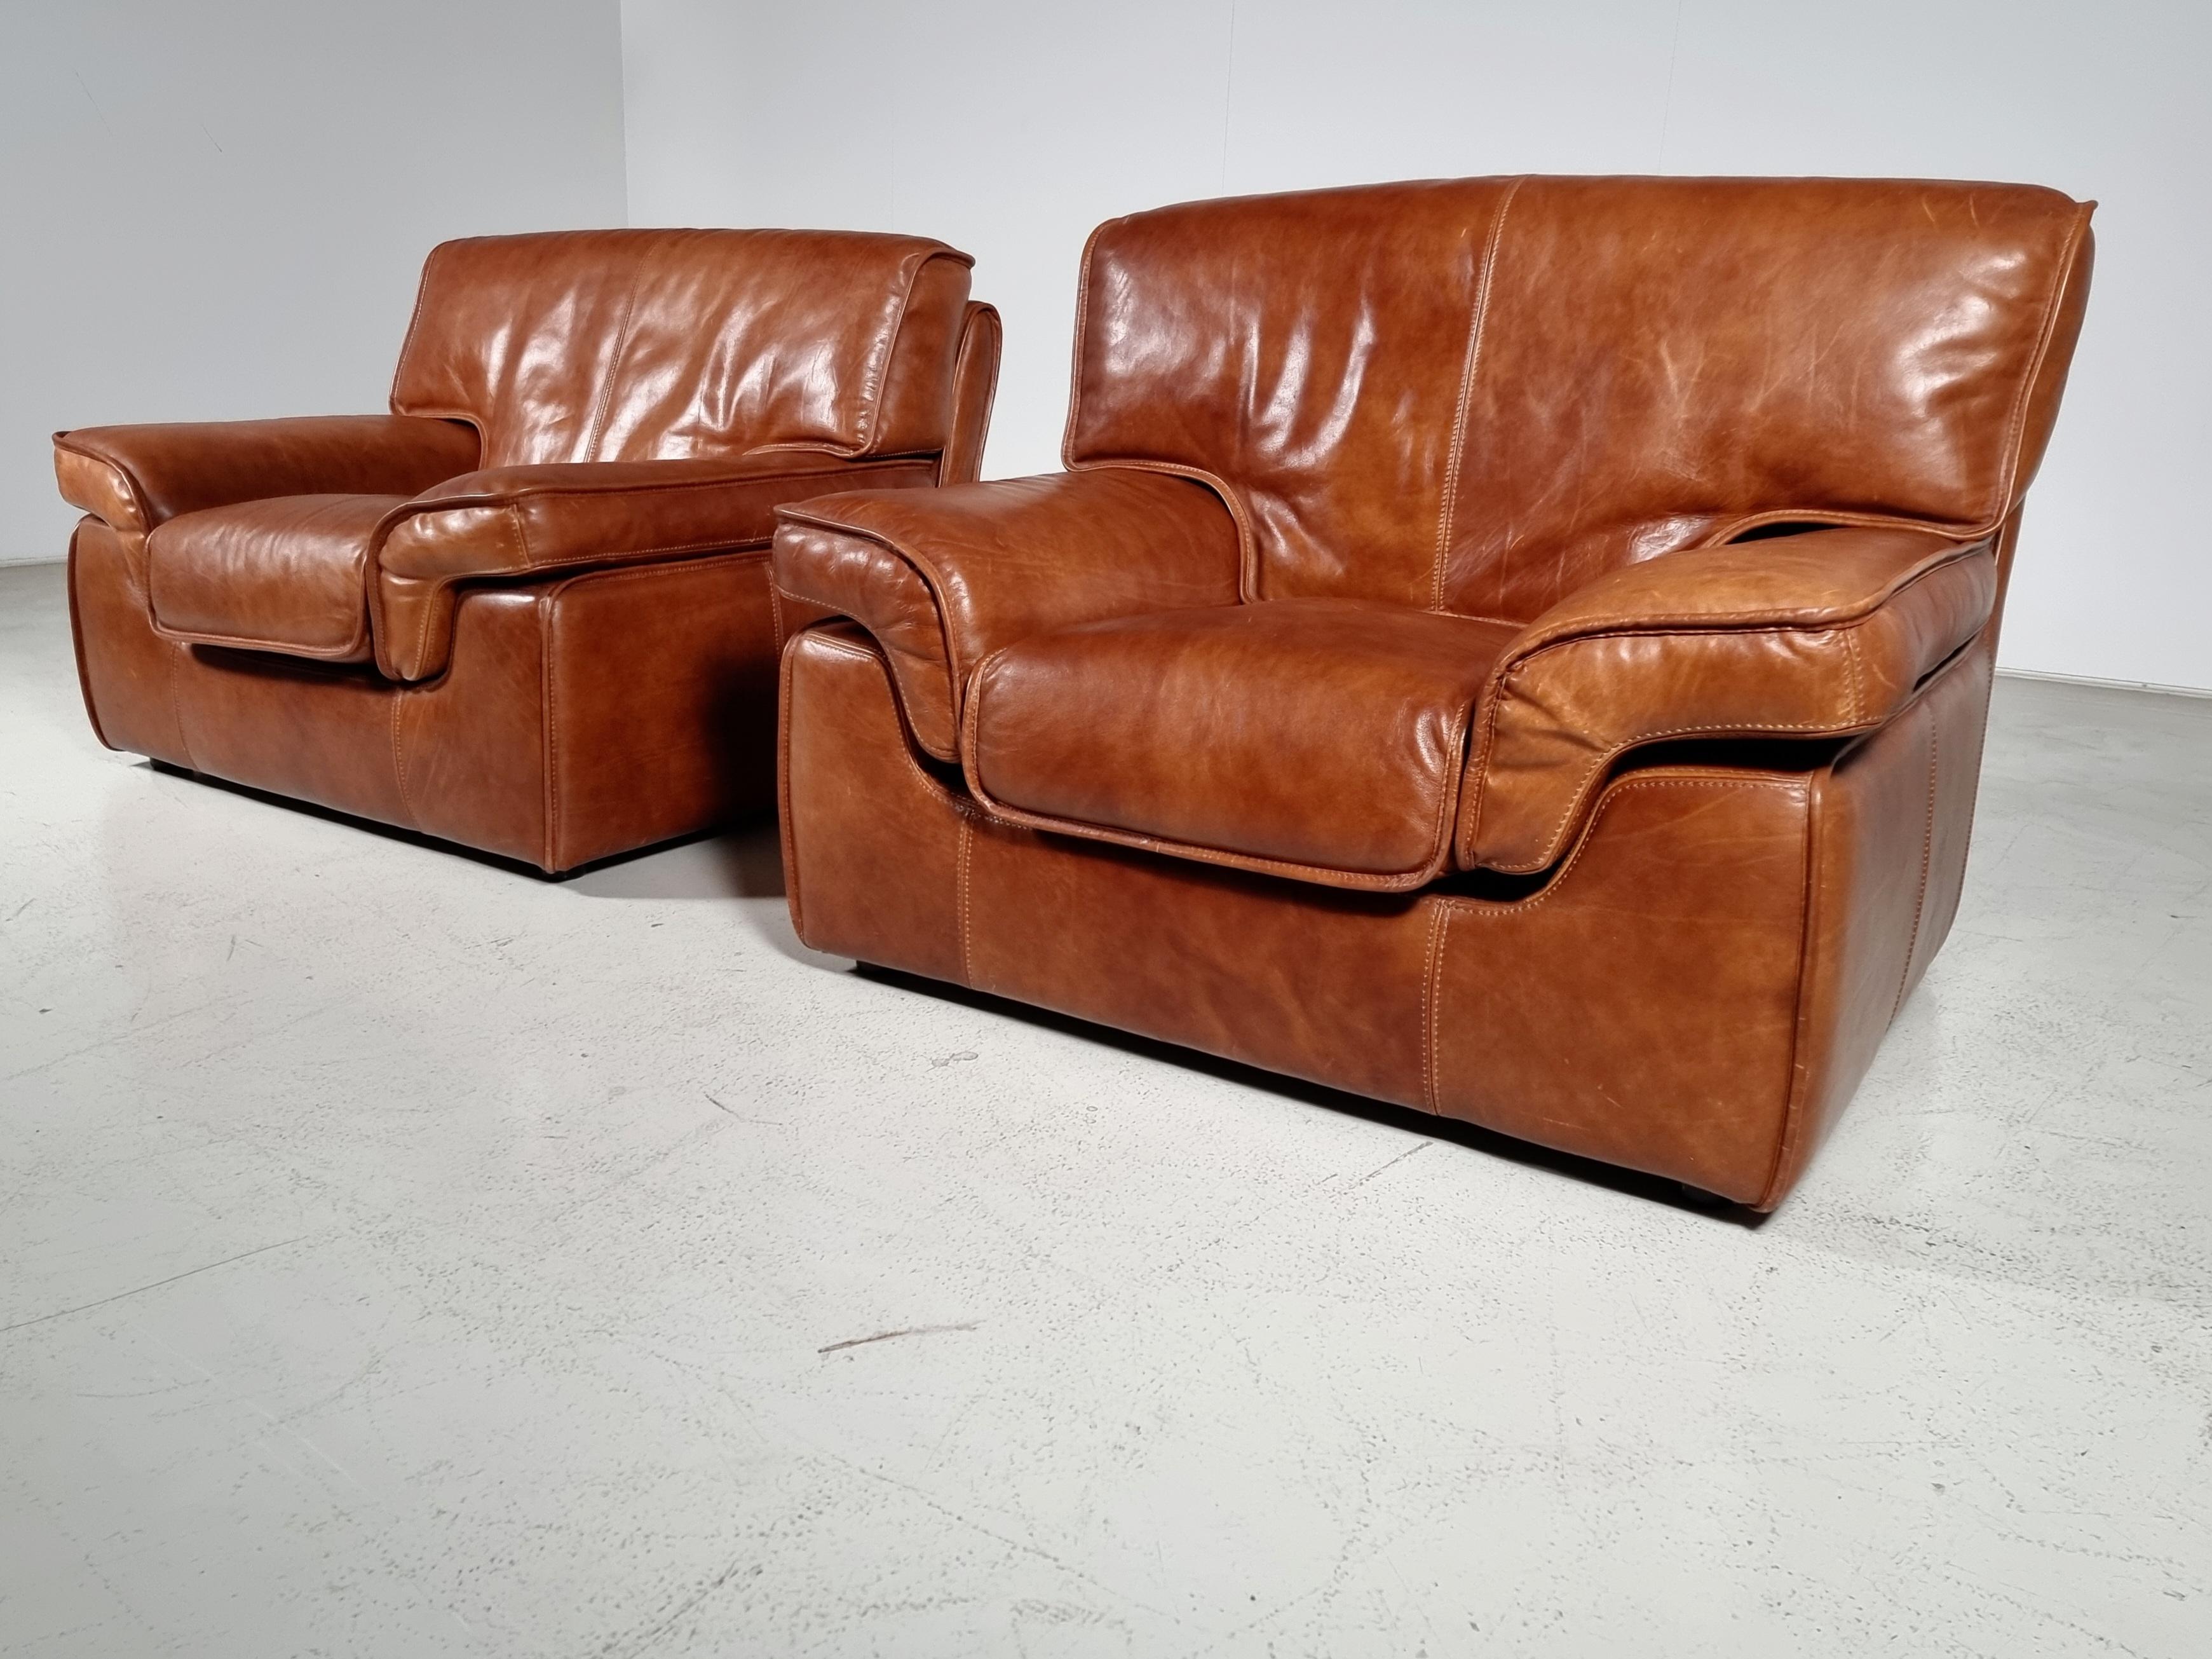 Magnifique ensemble de 2 chaises de salon / easy / club en cuir de buffle en cuir cognac avec des passepoils de la même couleur, Italie, années 1970. Siège confortable avec des détails étonnants et une grande qualité de fabrication. Le cuir présente